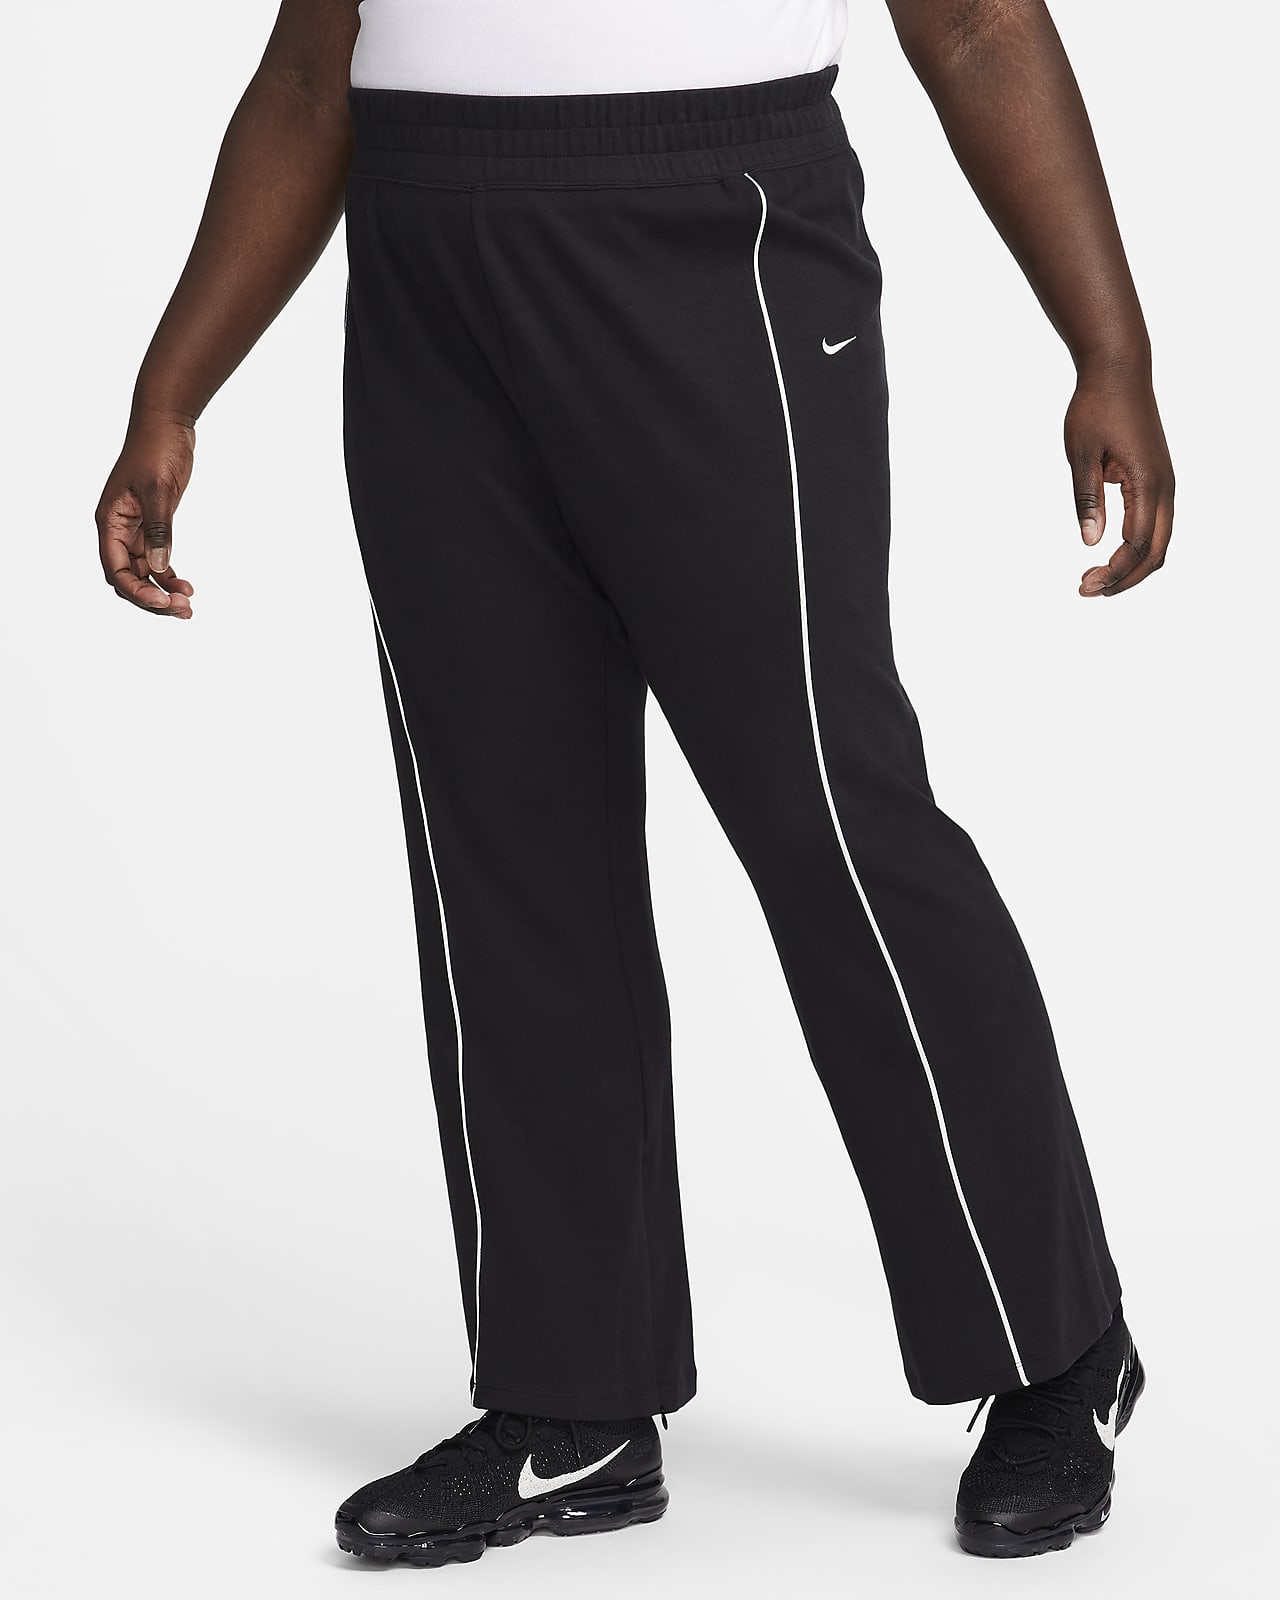 Γυναικείο παντελόνι με άνοιγμα στο τελείωμα Nike Sportswear Collection (μεγάλα μεγέθη)